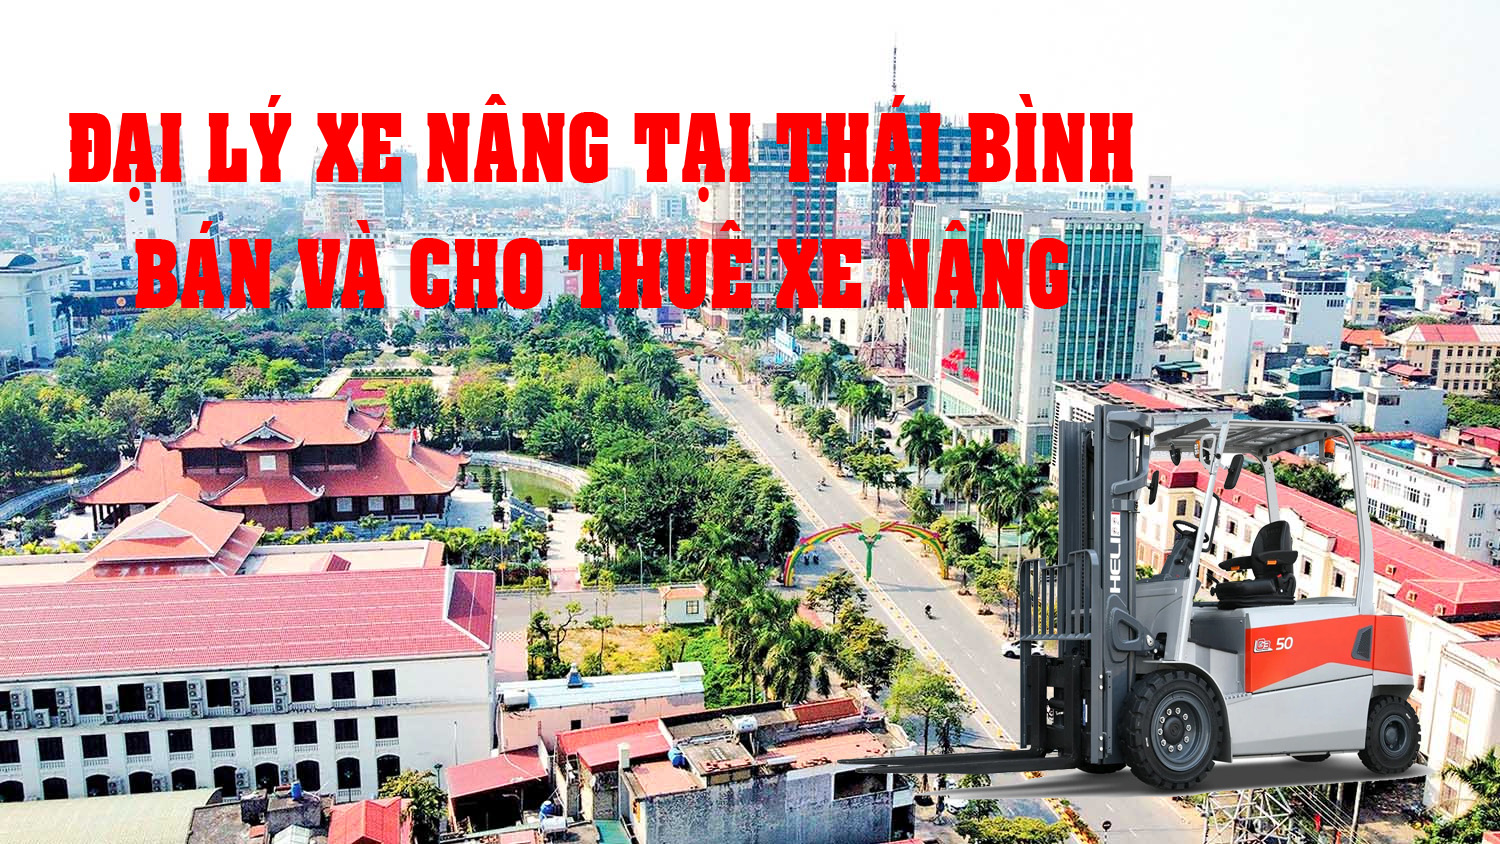 Đại lý bán và cho thuê xe nâng Heli tại Thái Bình